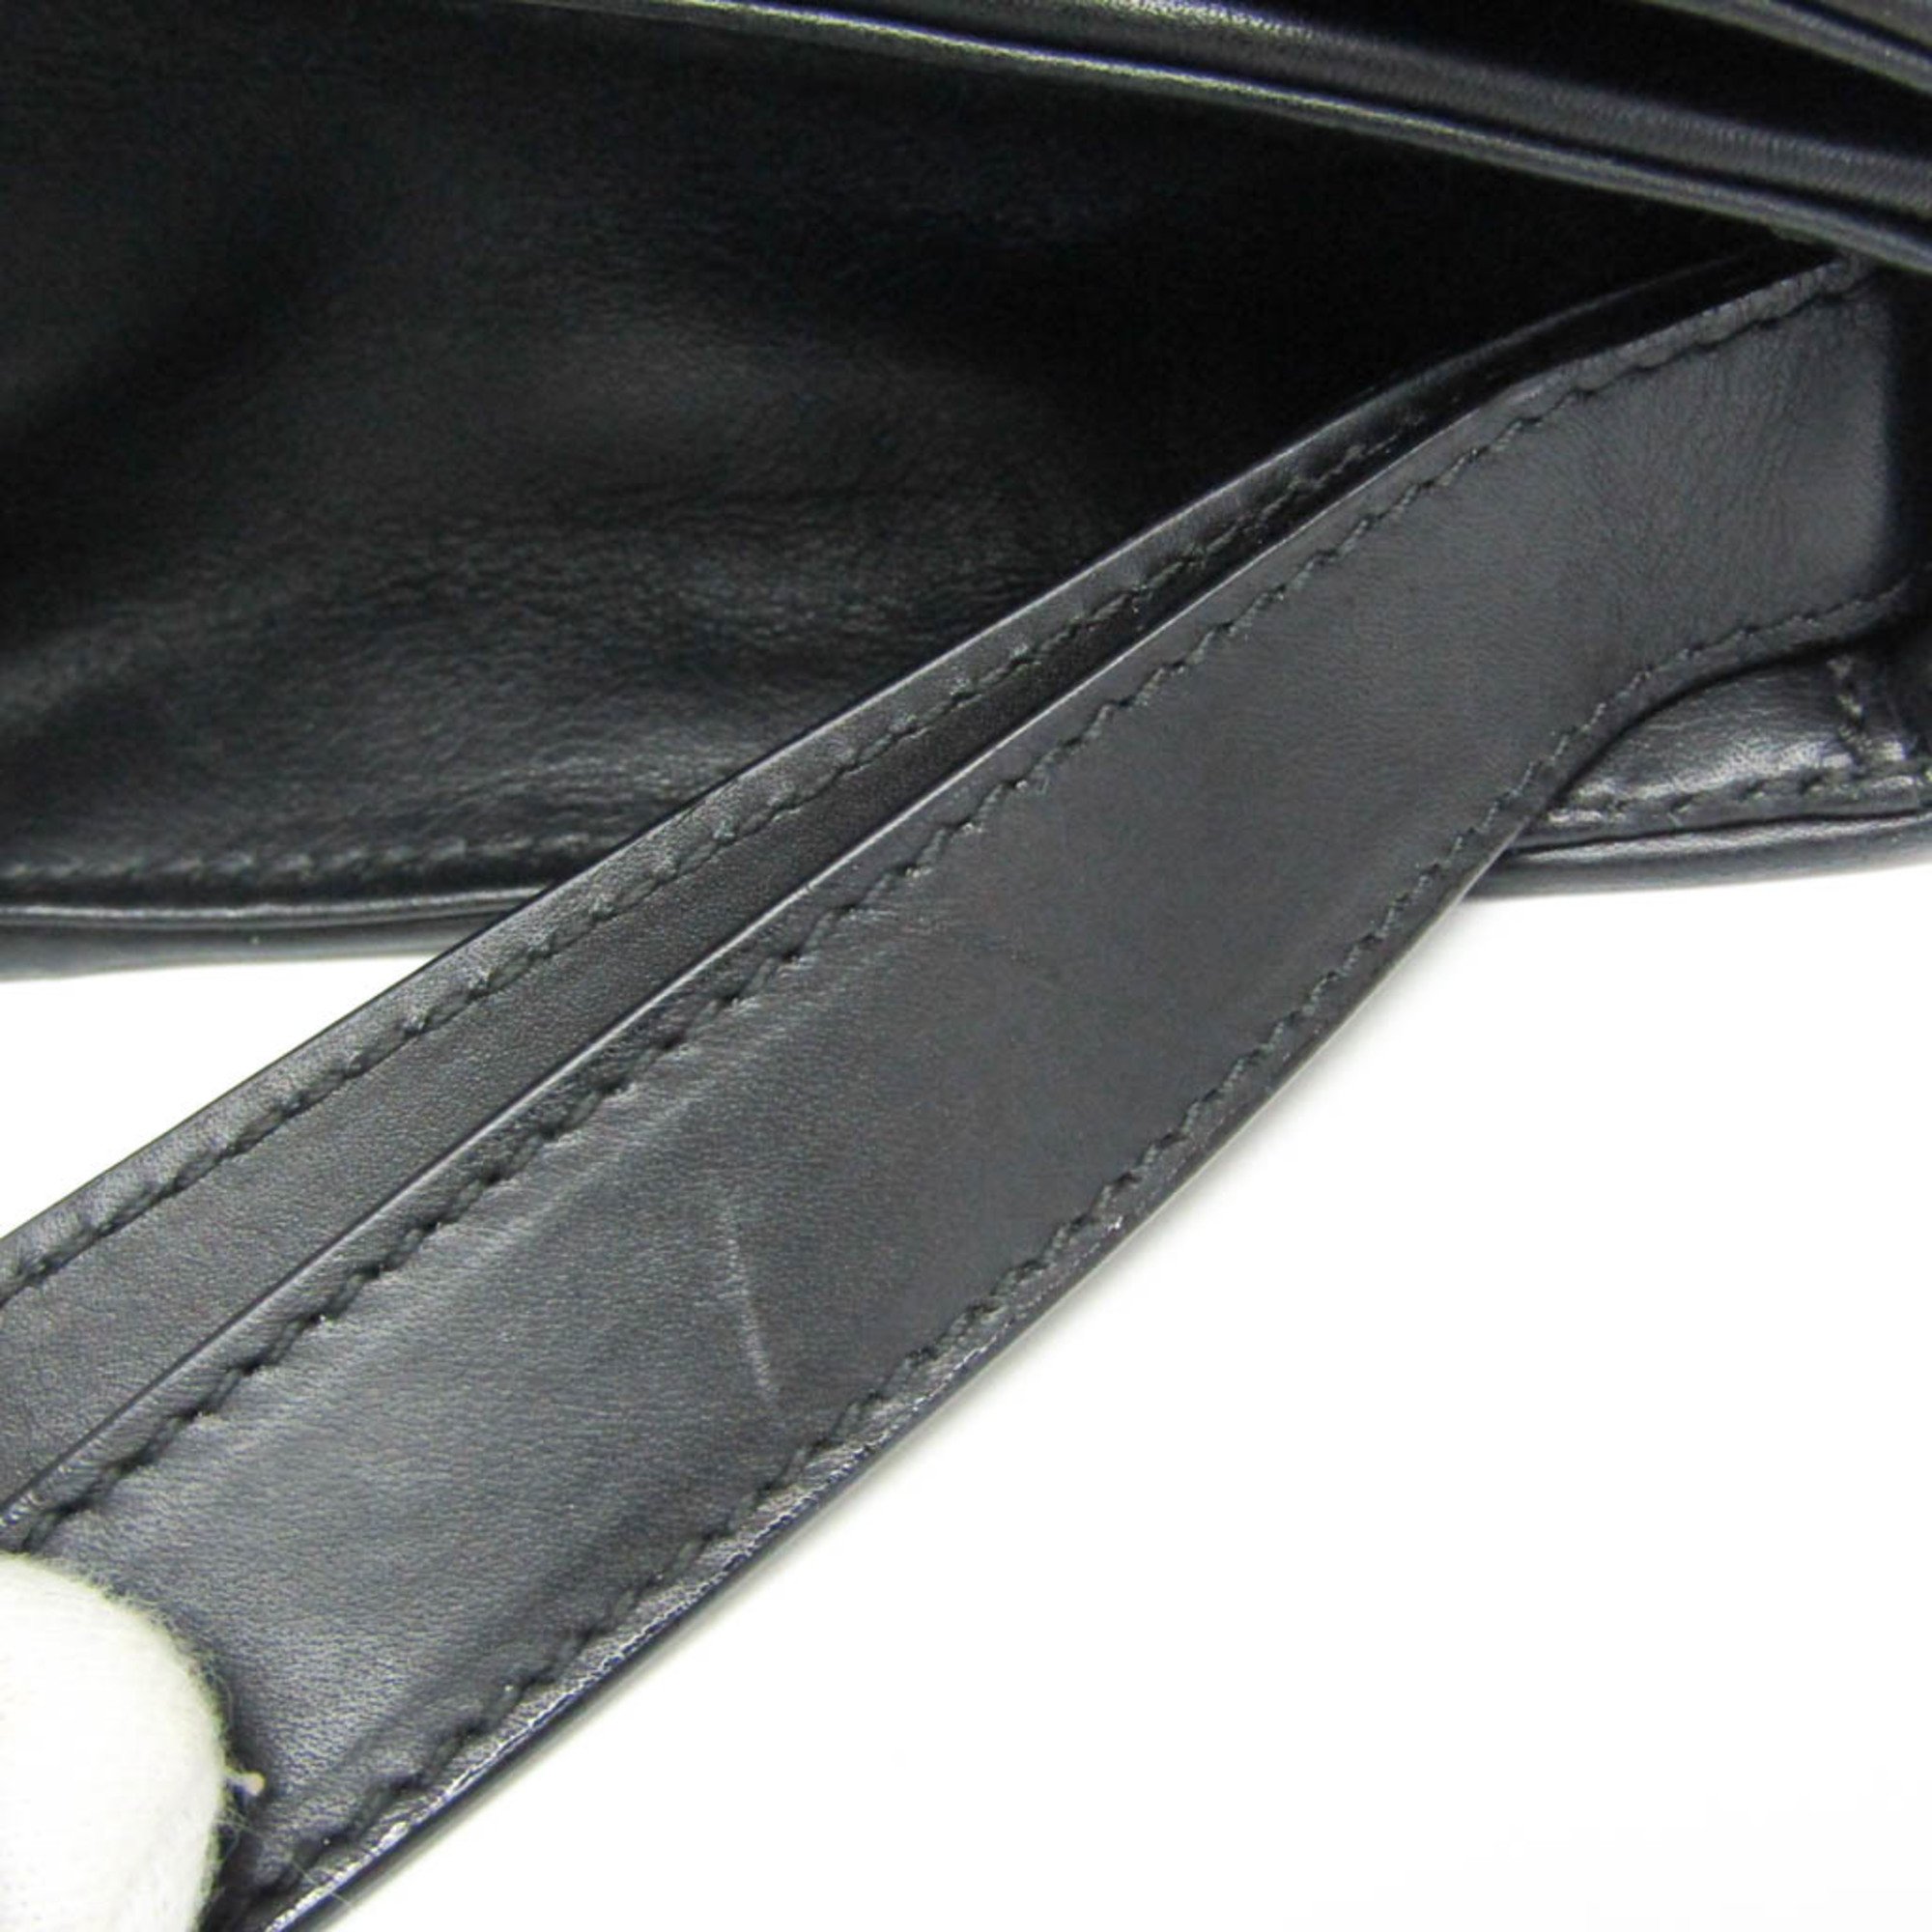 Bottega Veneta Intrecciato 145186 Men's Leather Clutch Bag Black